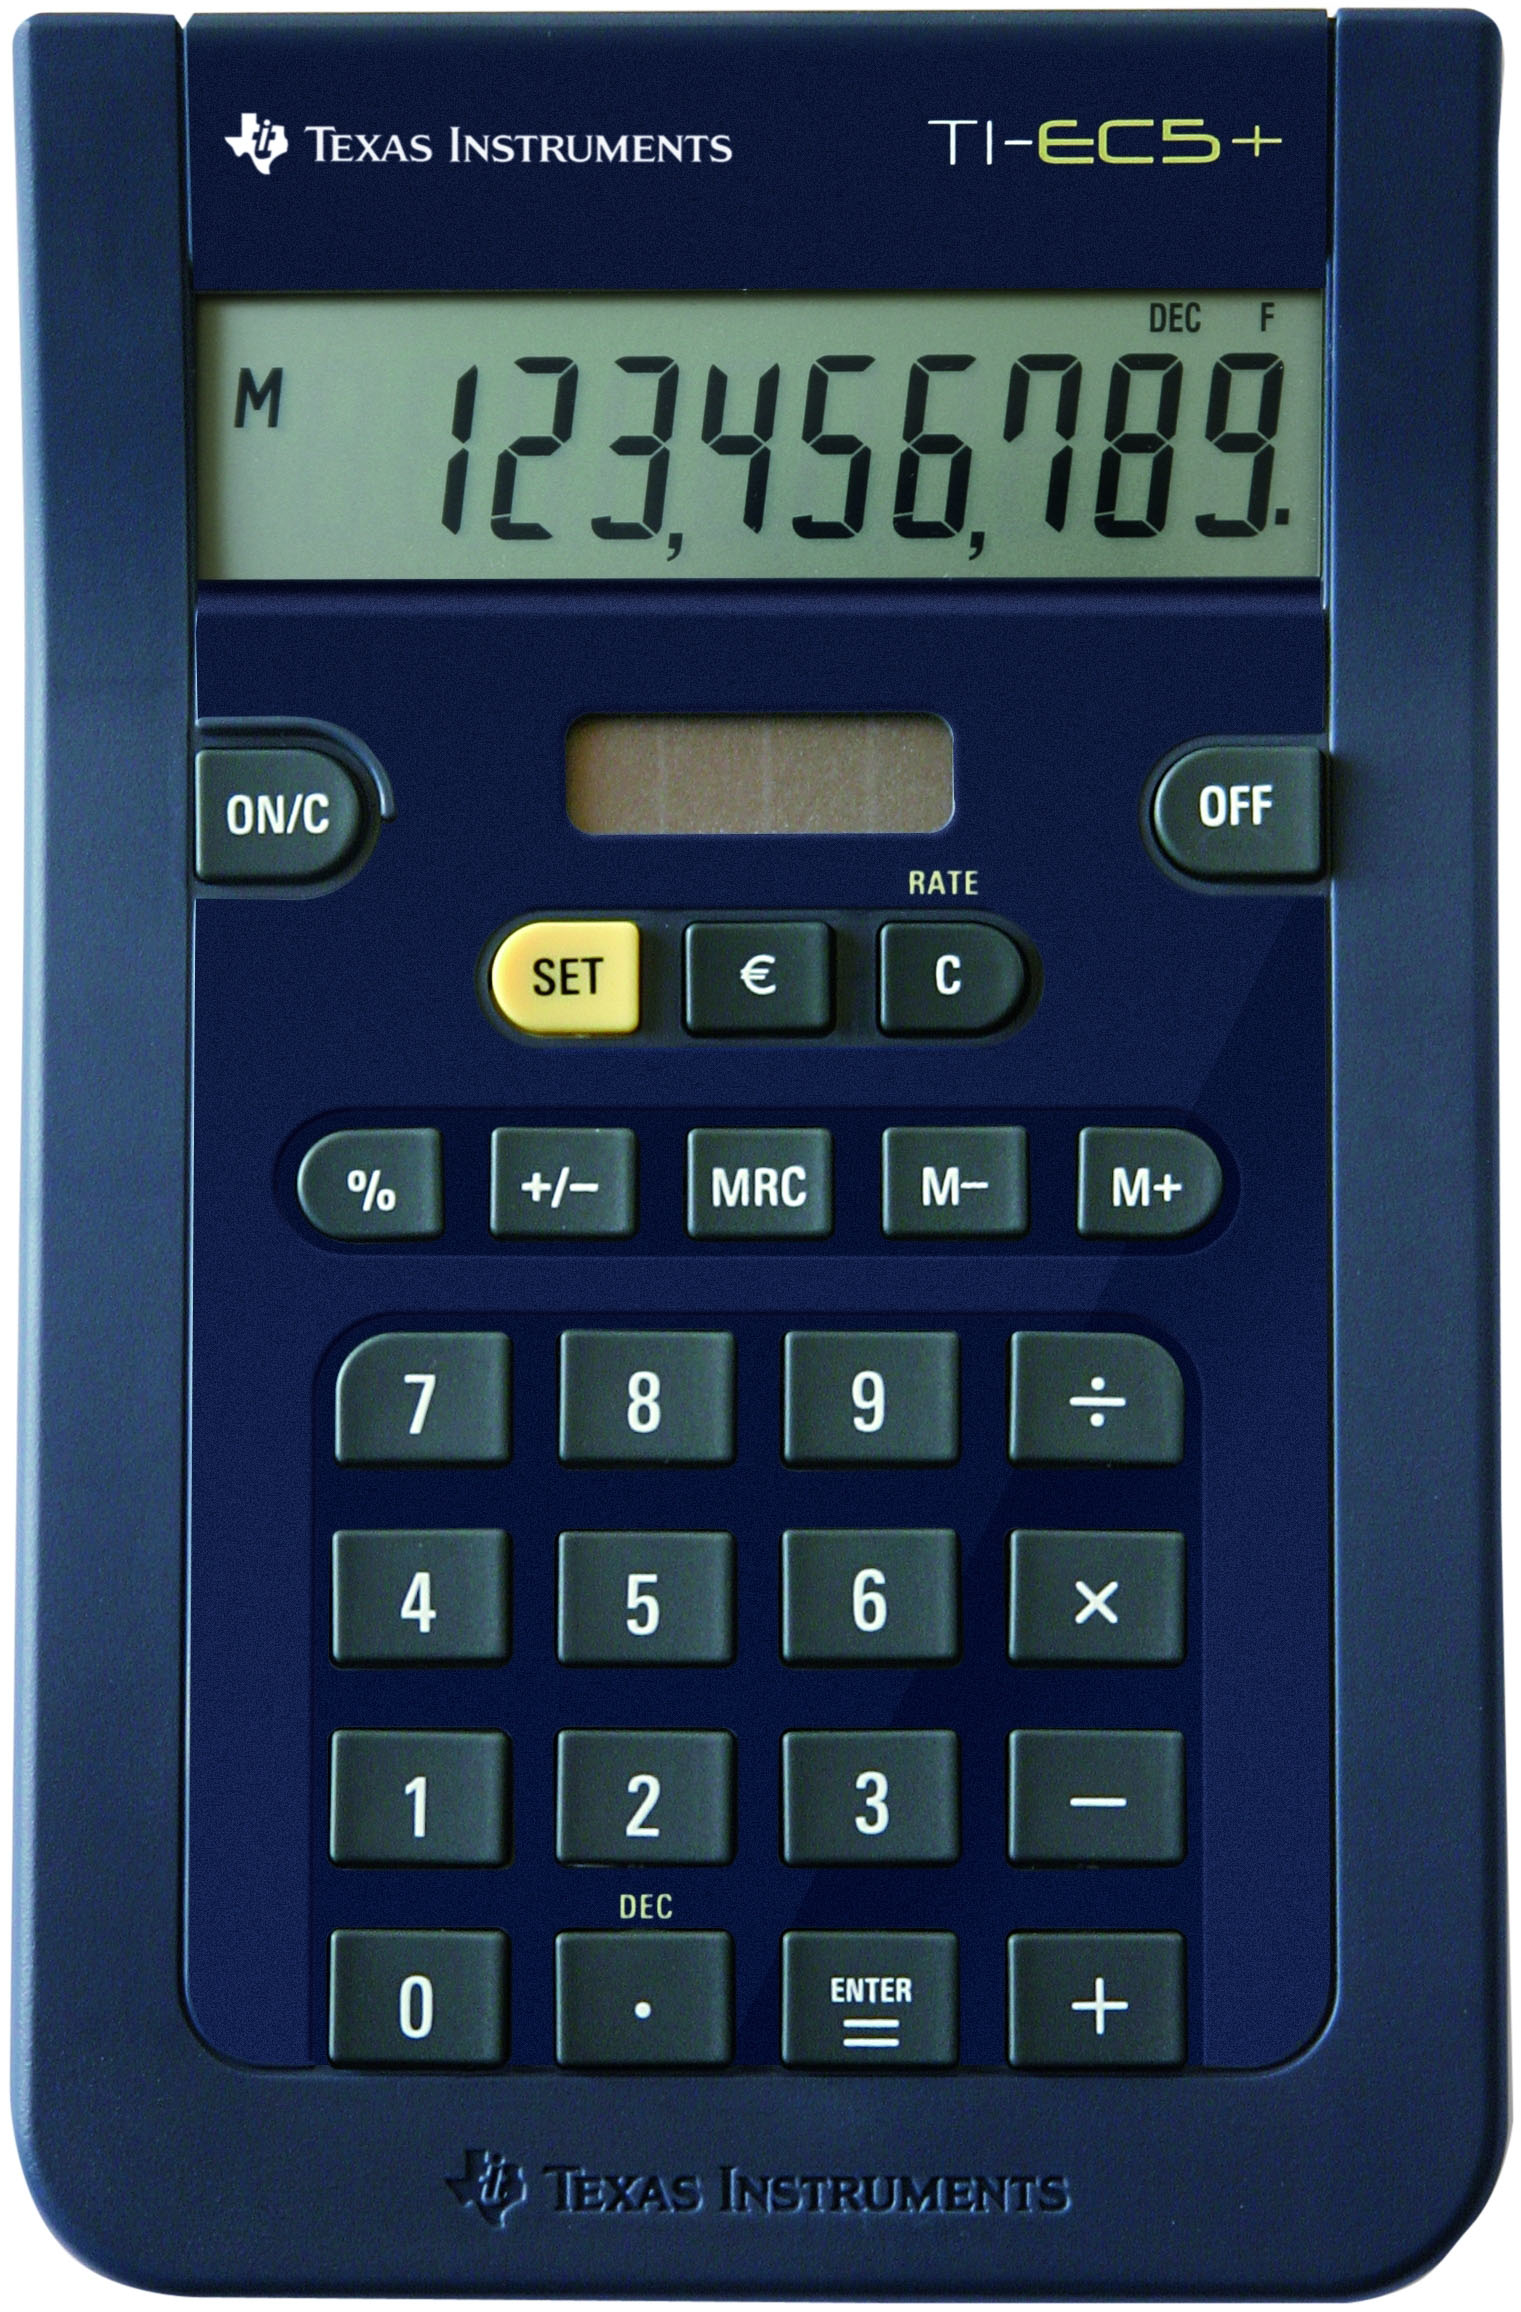 TEXAS INSTRUMENTS Calculatrice EC5+